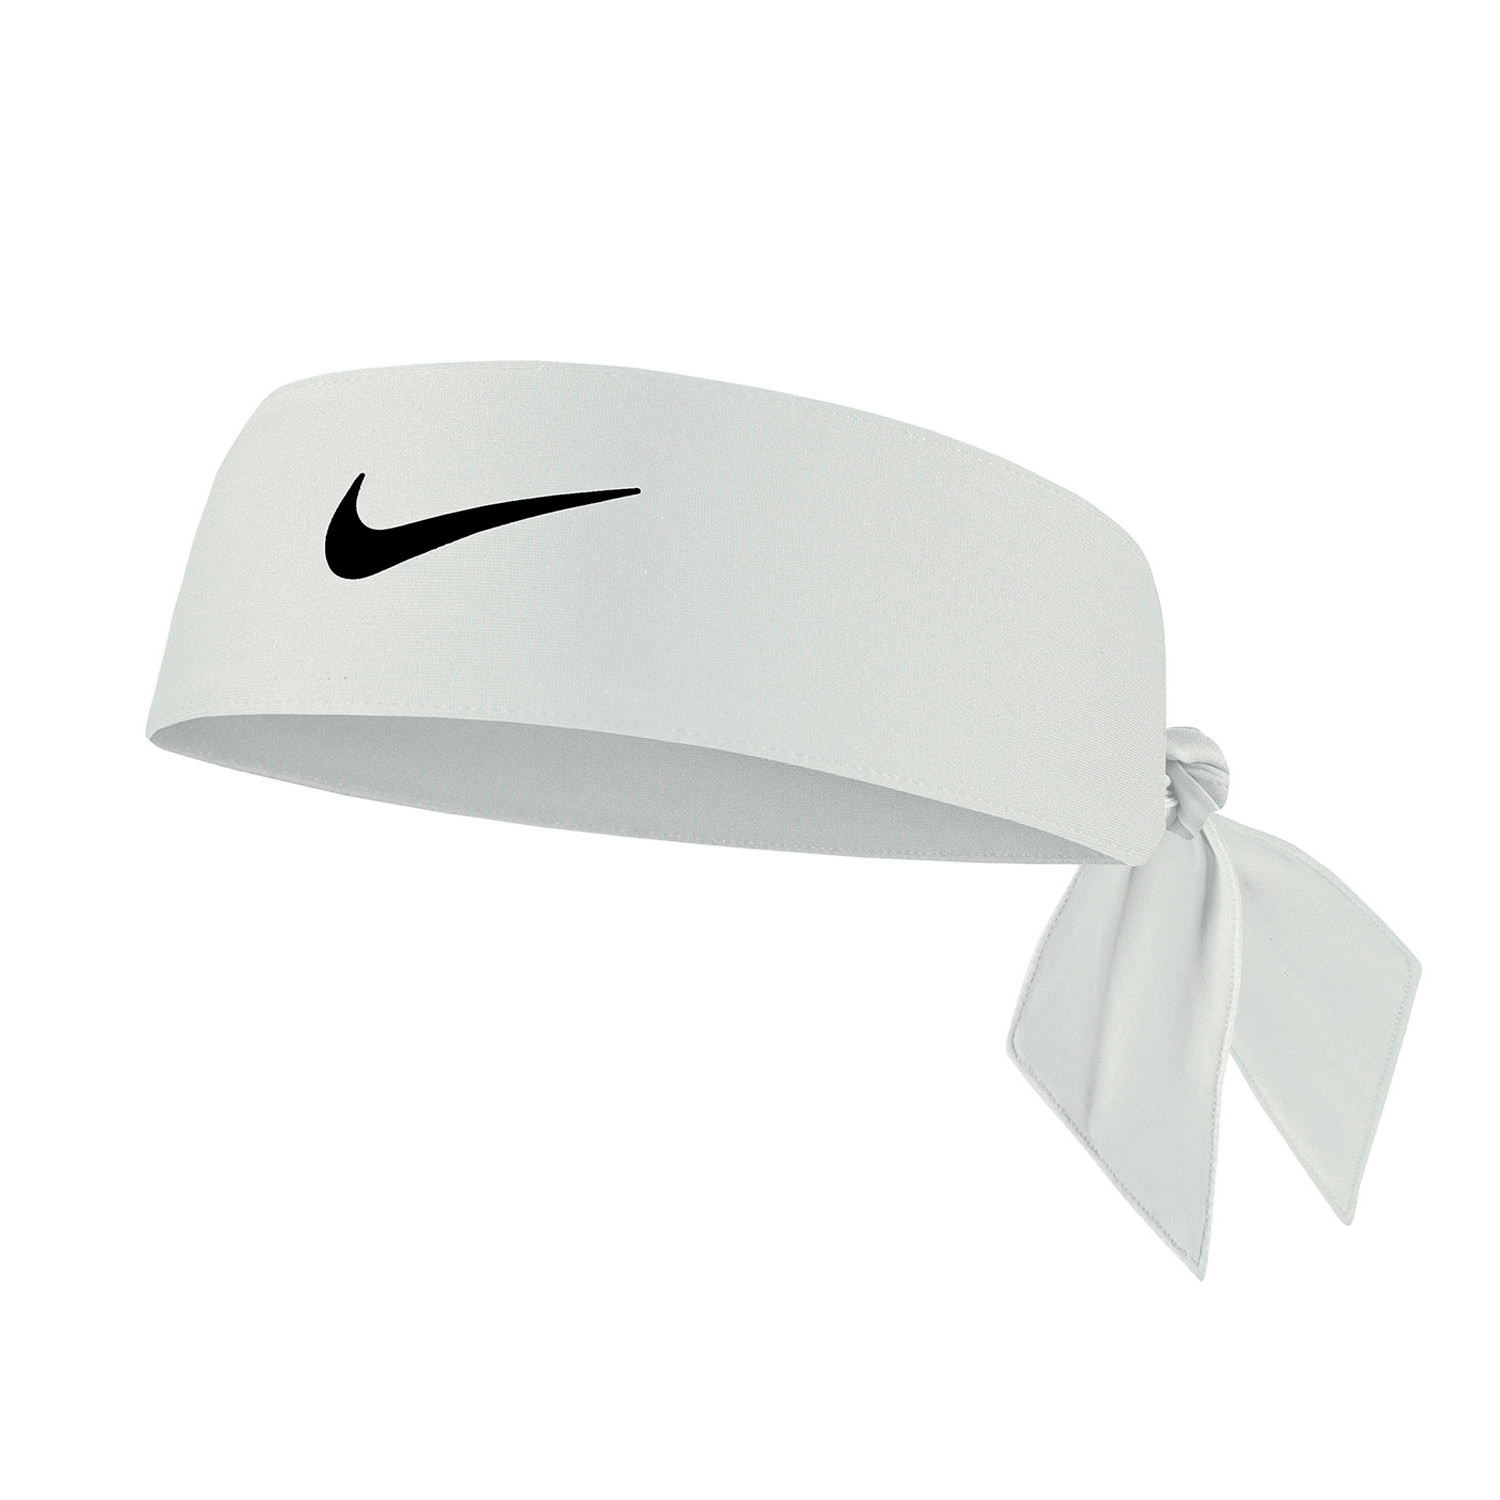 Banda de pelo Nike Dri-Fit Head Tie 4.0 blanca futbolmania